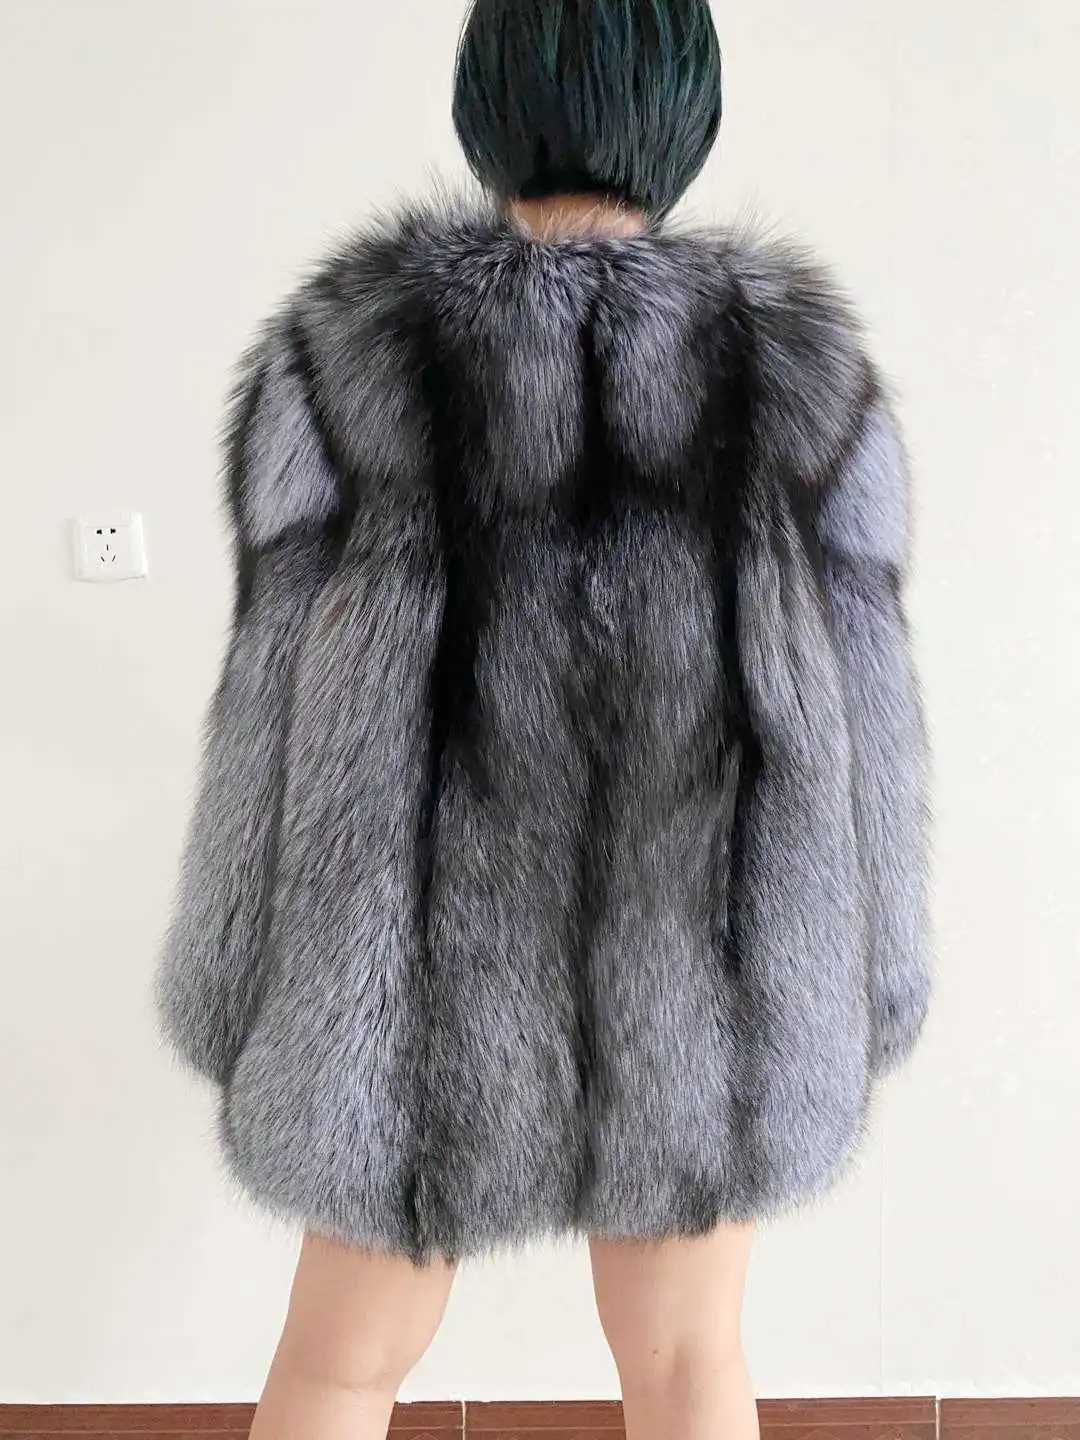 FURYOUME 2022 Winter Women Real Silver Fox Fur Coat Wholeskin Natural Fur Jacket Ladies Luxury Outerwear Long Sleeves Overcoat enlarge